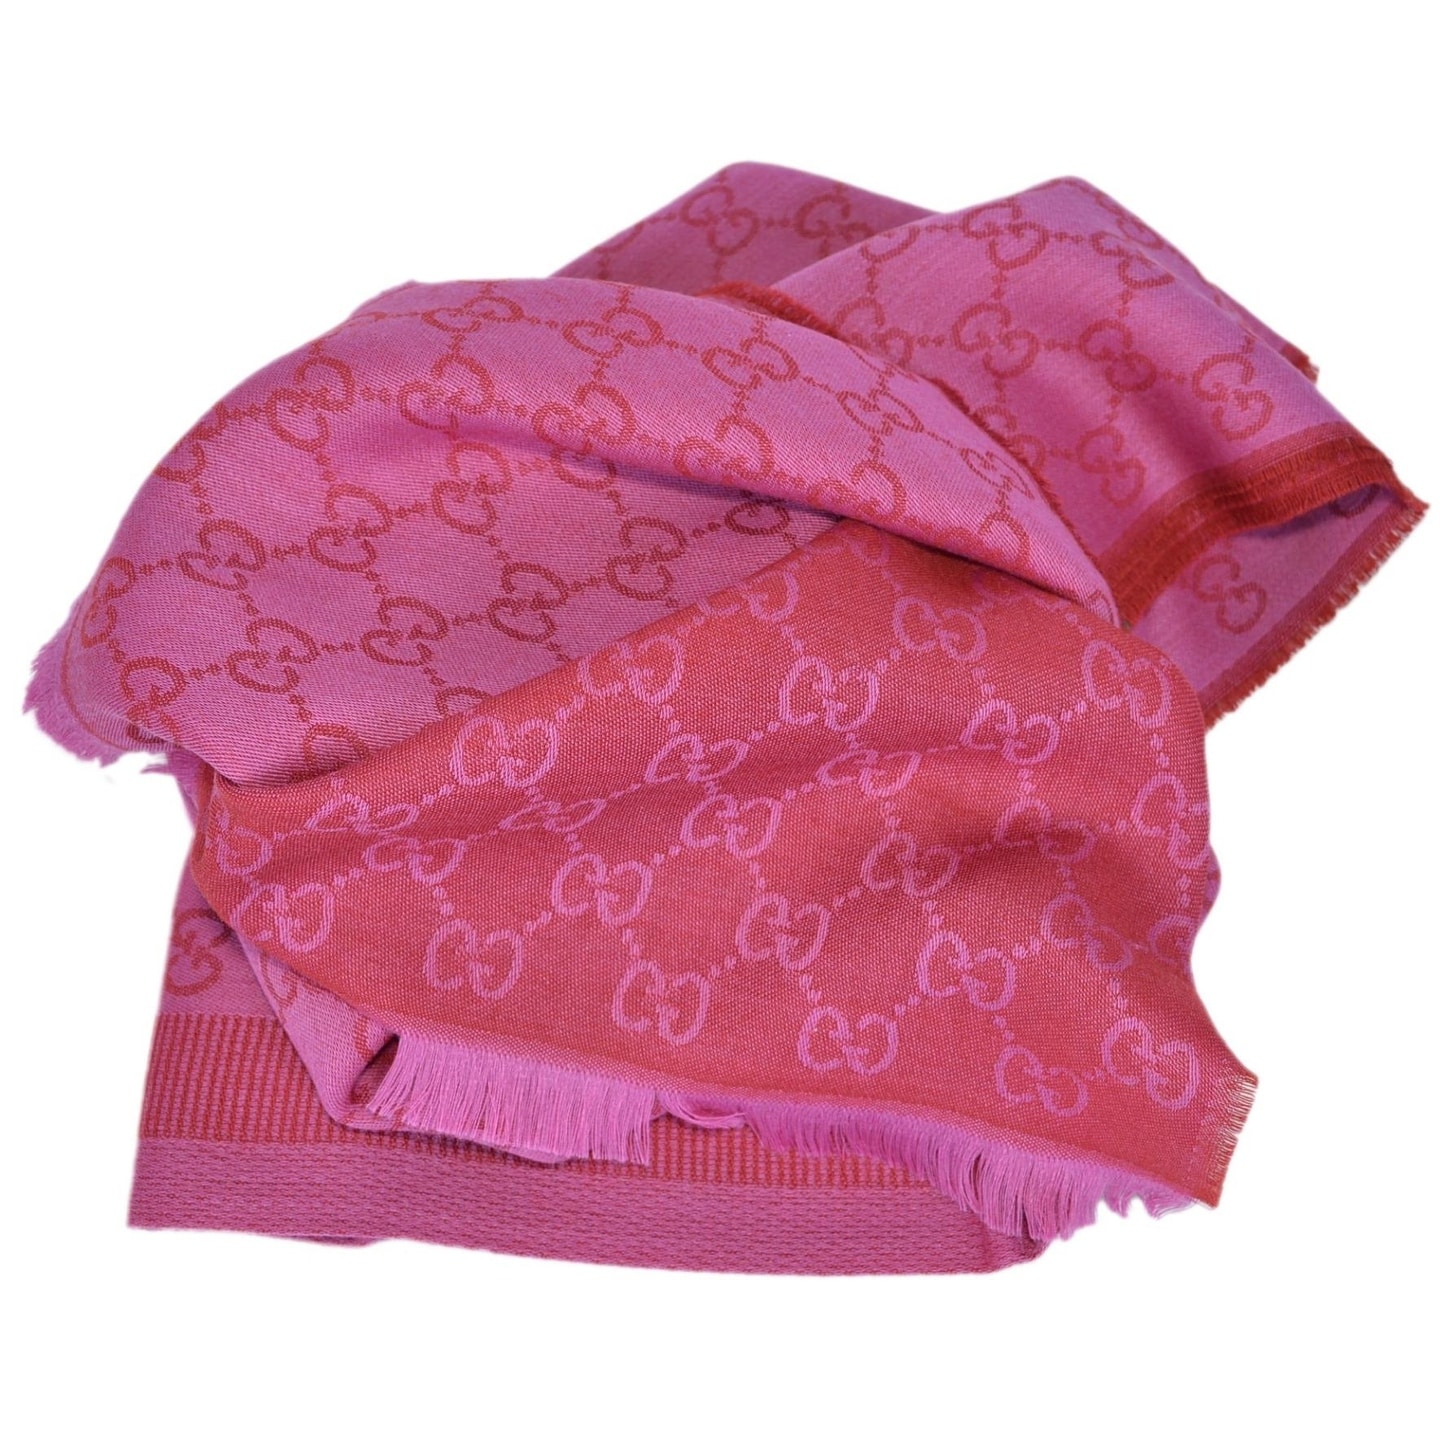 gucci shawl scarf